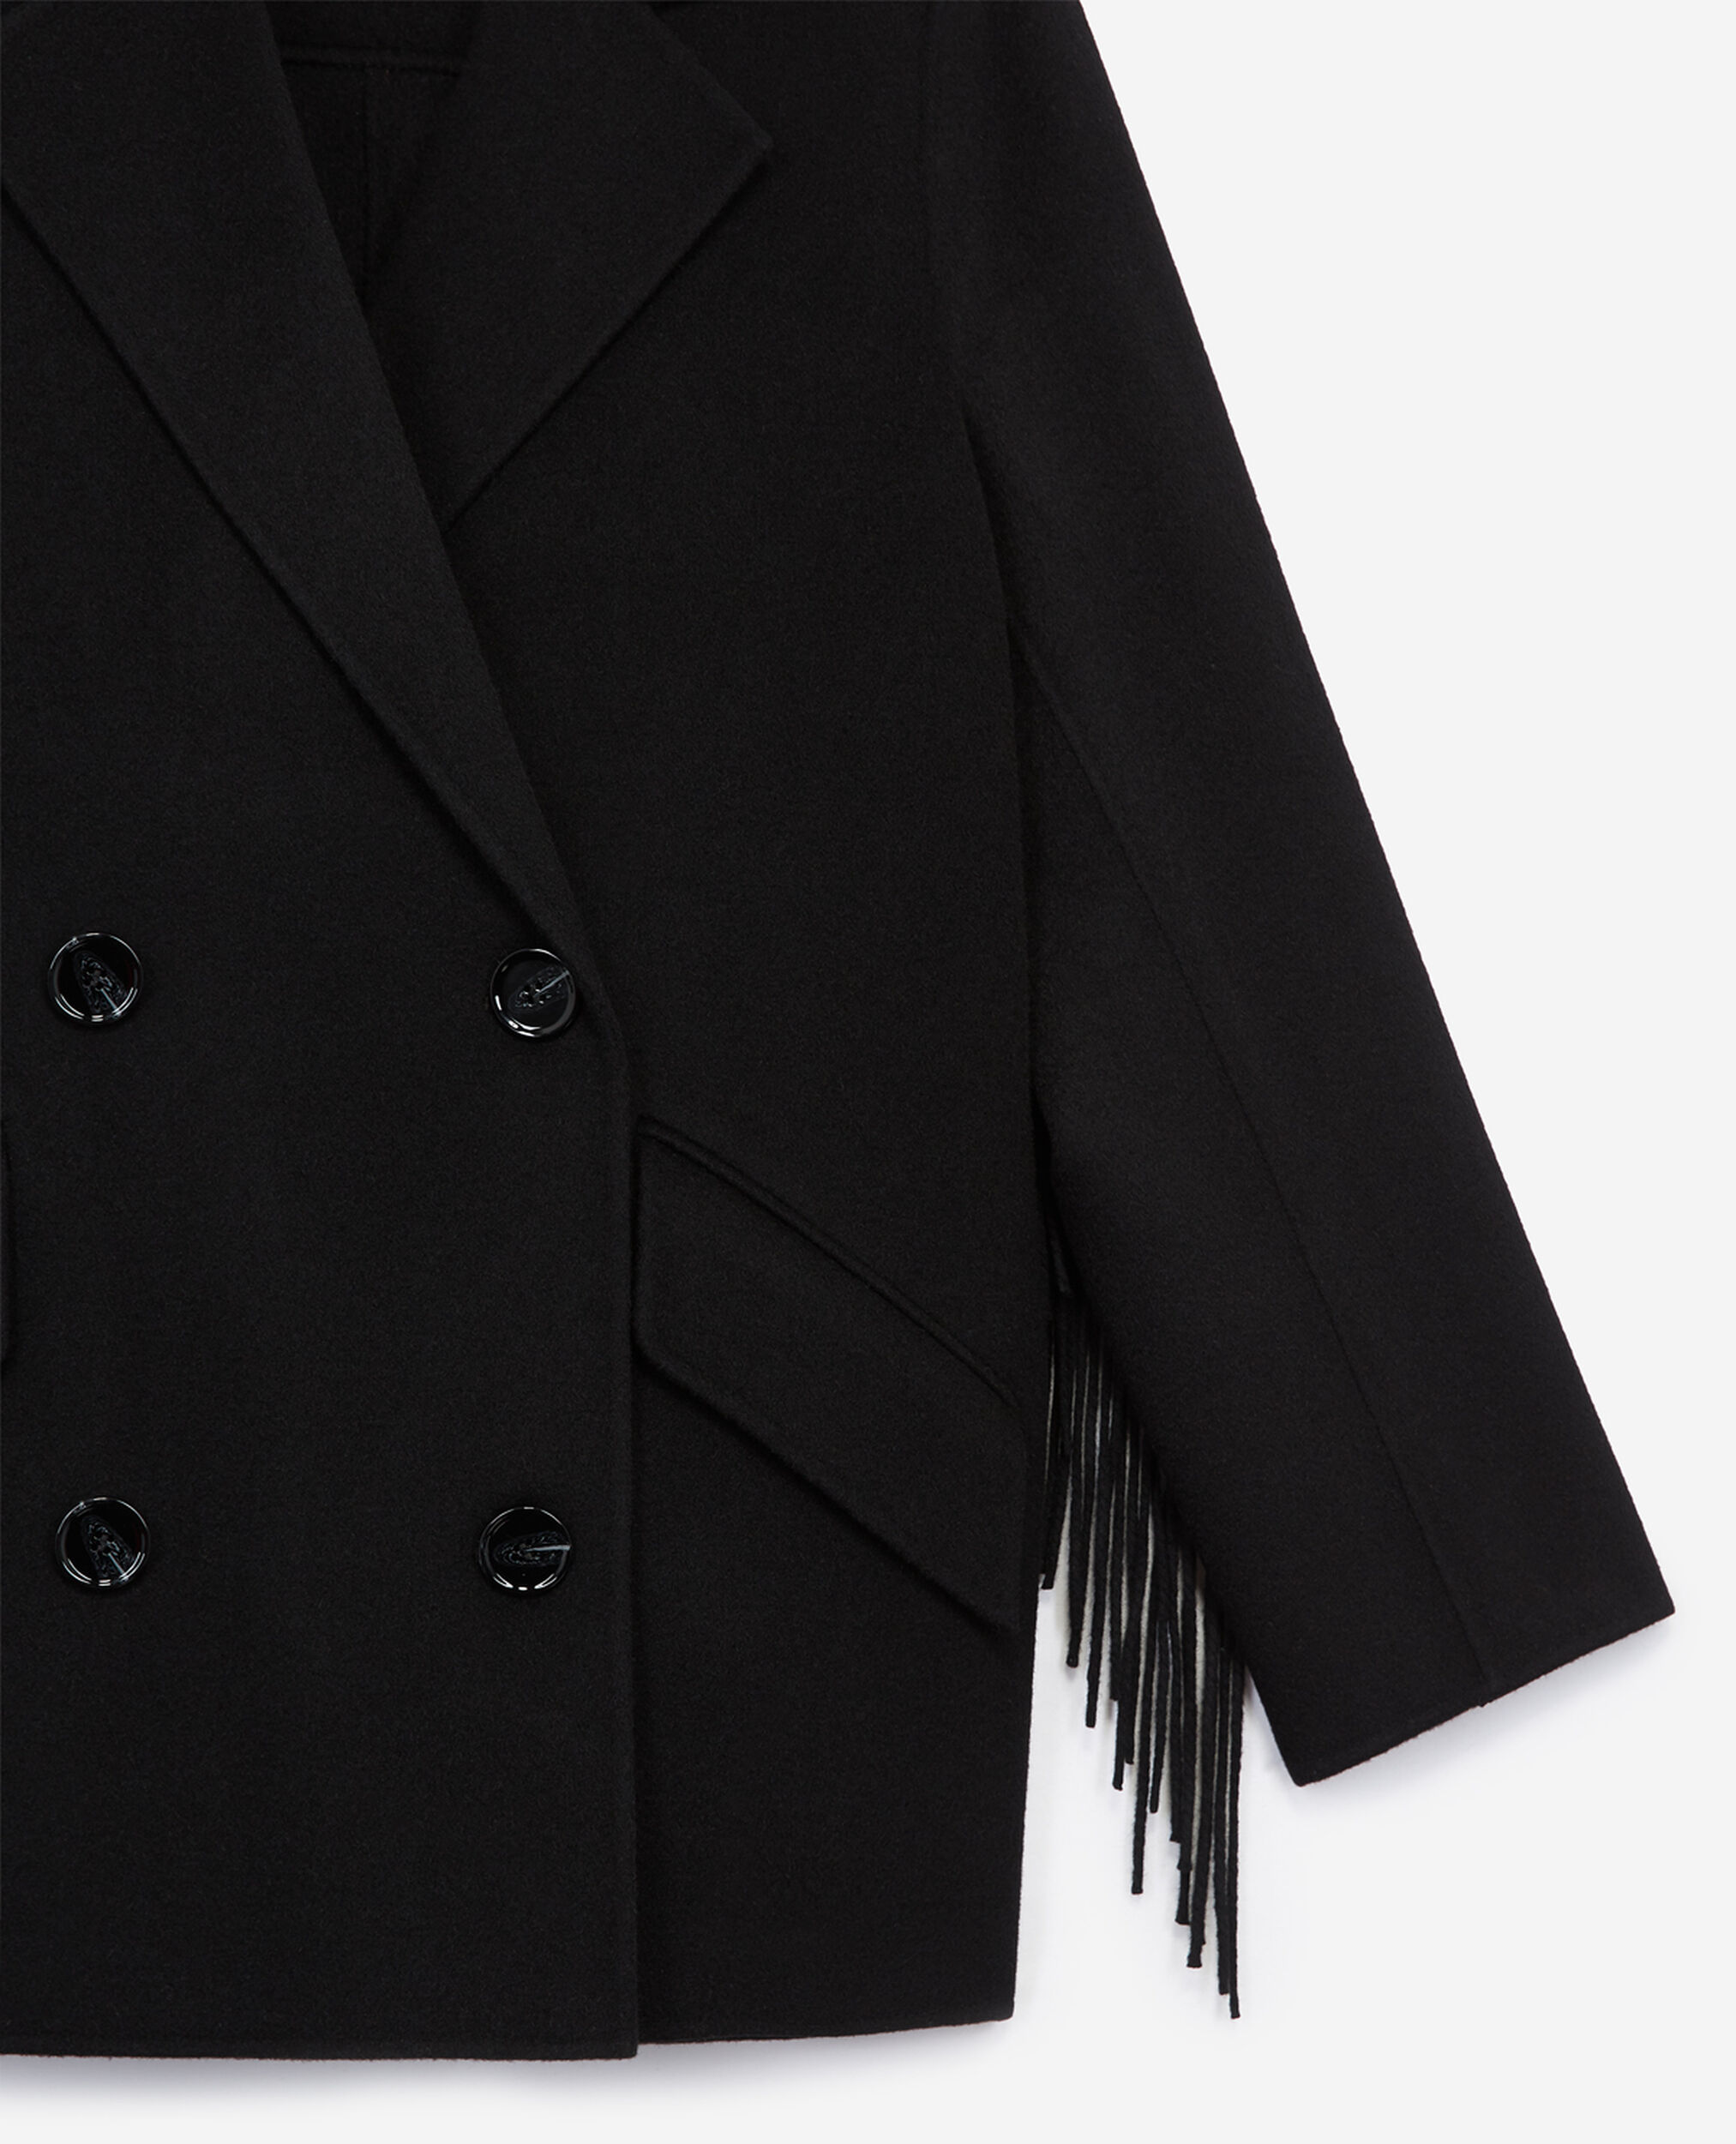 Manteau laine noir court à franges, BLACK, hi-res image number null